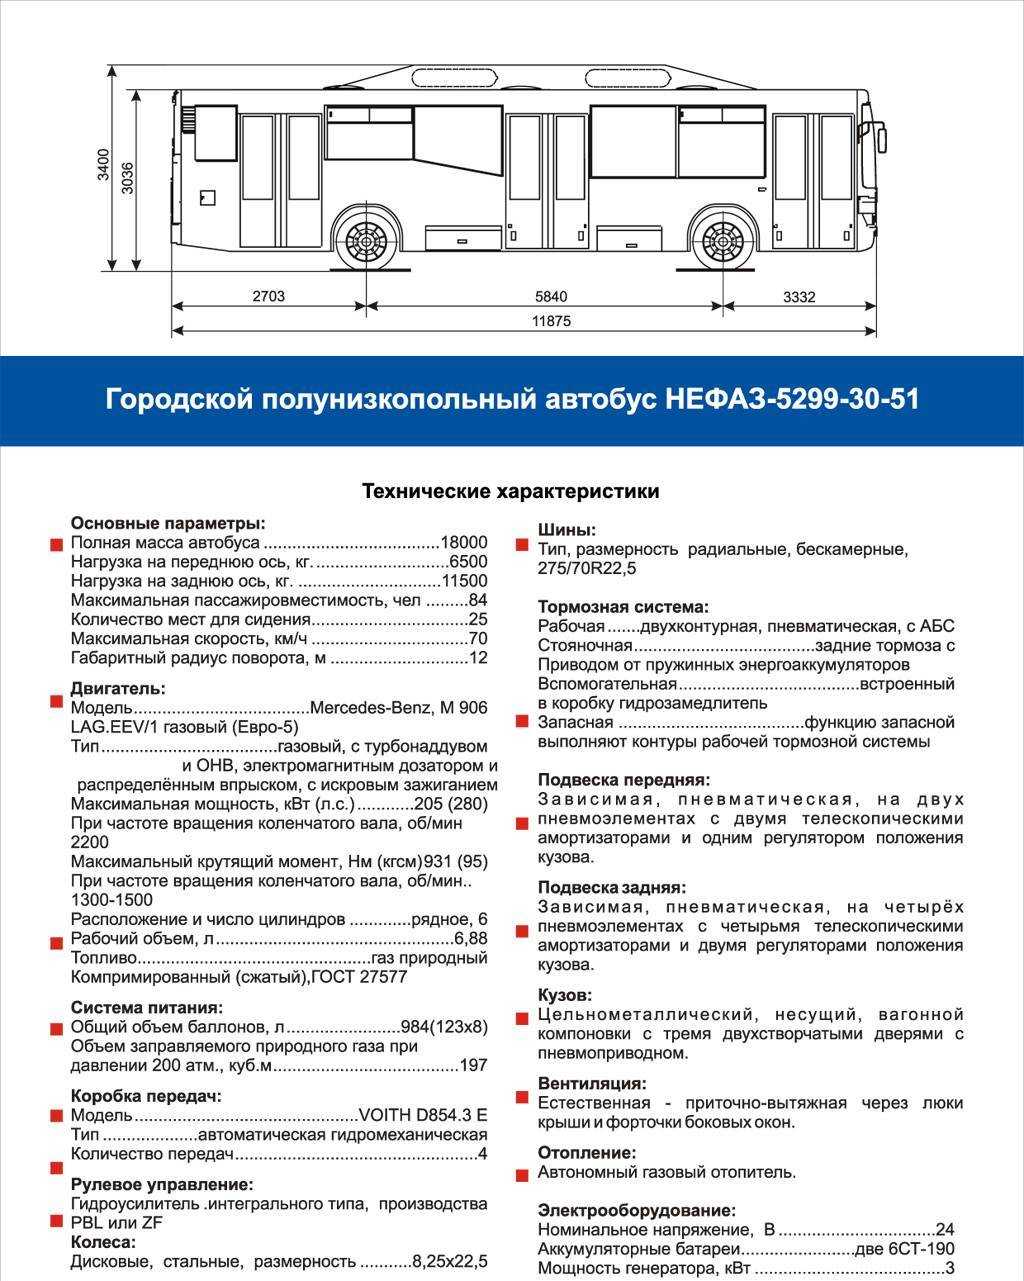 Электробус характеристики. Автобус НЕФАЗ технические характеристики. Автобус НЕФАЗ 5299 технические характеристики на метане. ЛИАЗ-5292 технические характеристики. НЕФАЗ-5299 технические характеристики.